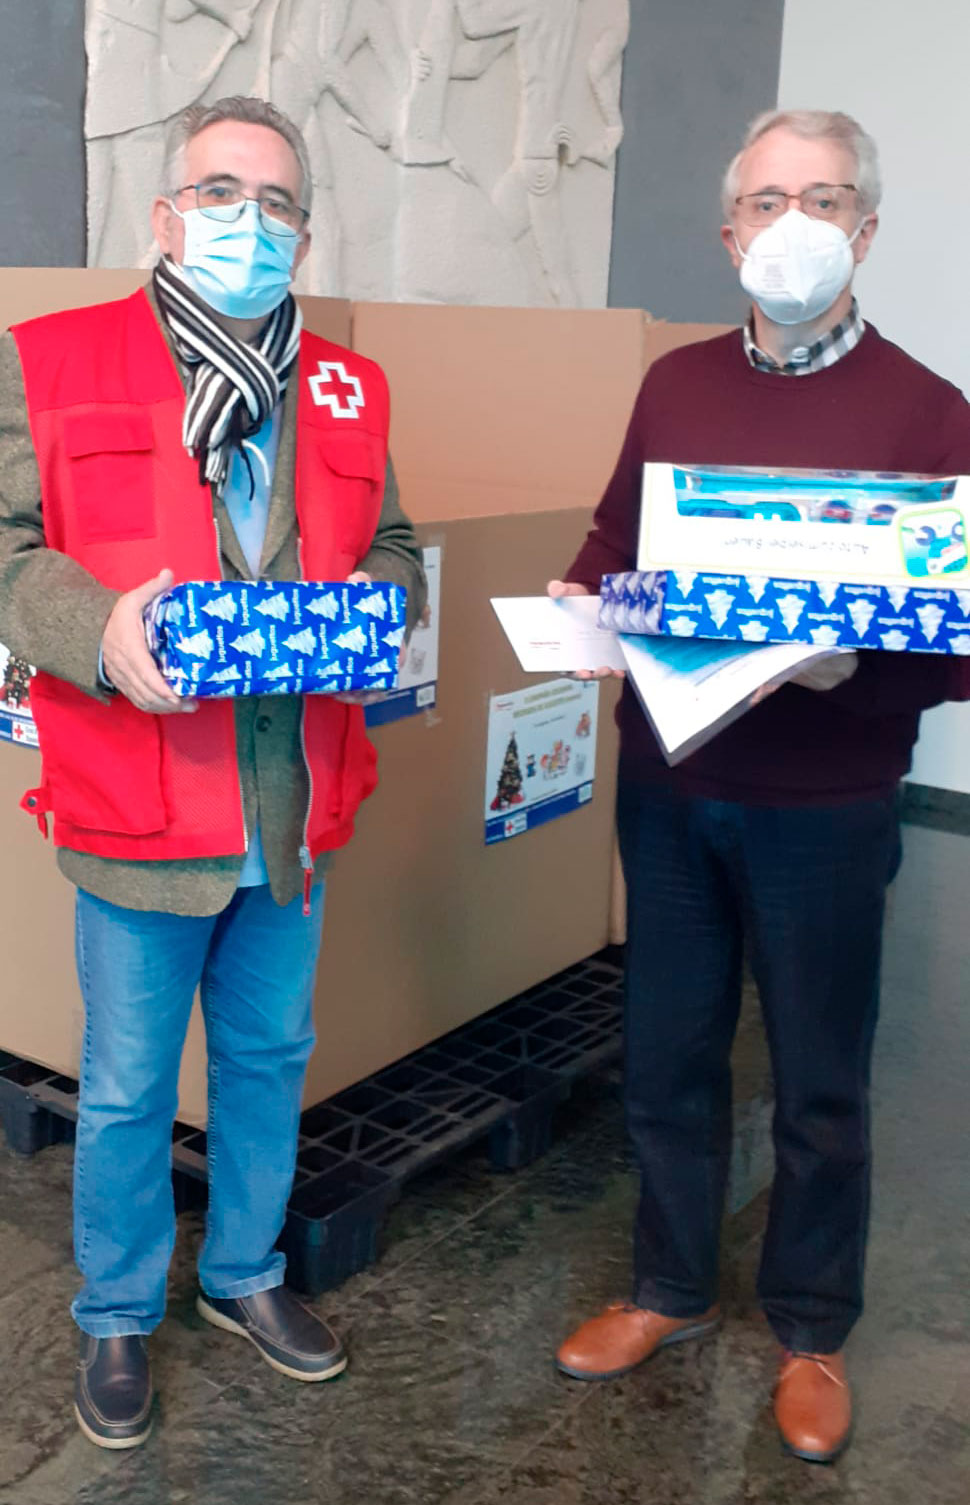 Frimancha recauda juguetes y aporta 1.000 euros para la campaña “Un juguete, mil sonrisas”